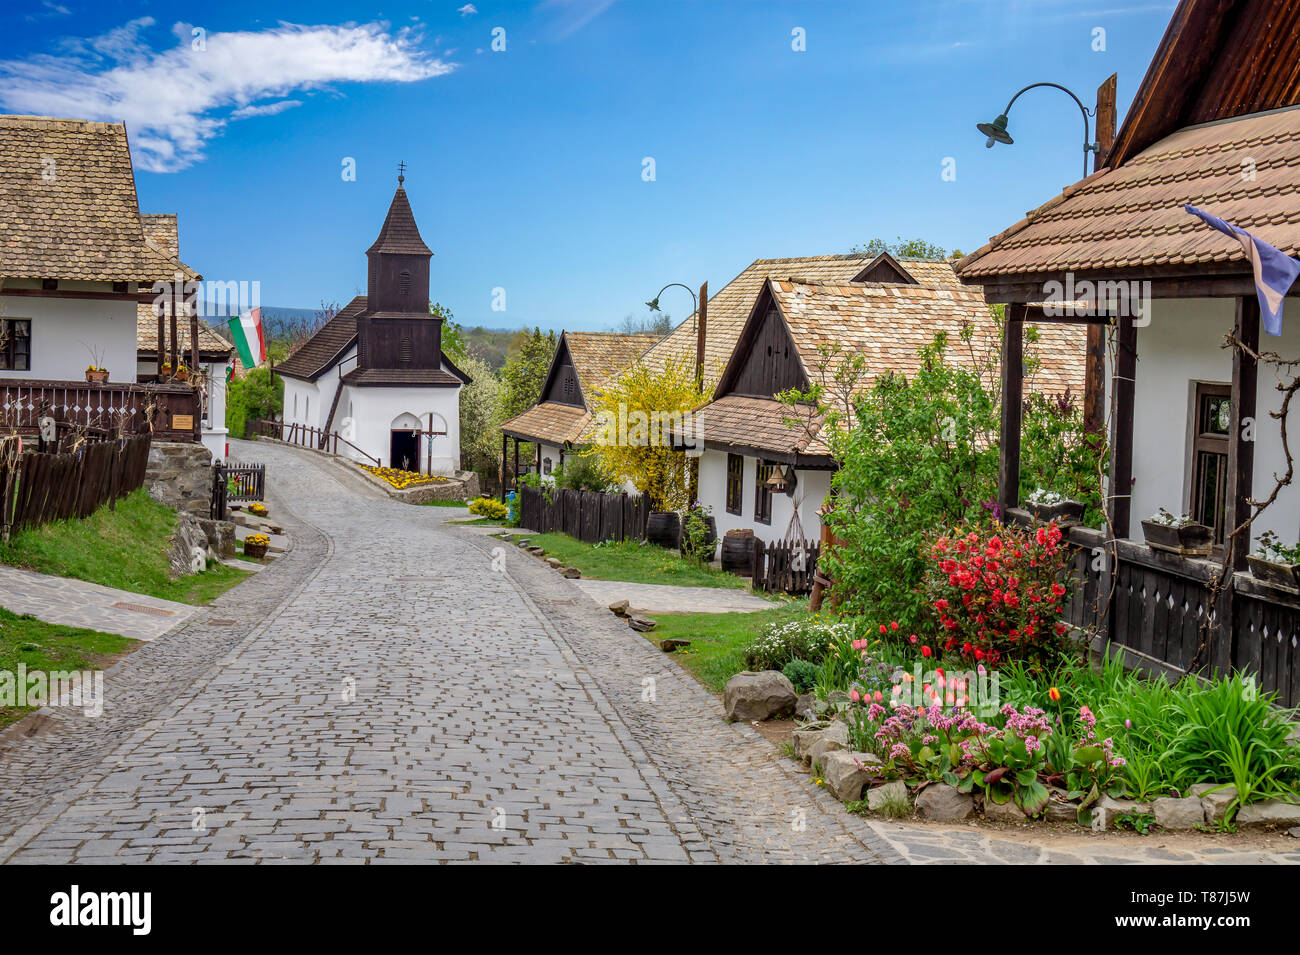 Petit village de Holloko Hongrie célèbre pour la célébration de Pâques et ses vieilles maisons traditionnelles hongroises Unesco world heritage printemps avec des fleurs Banque D'Images